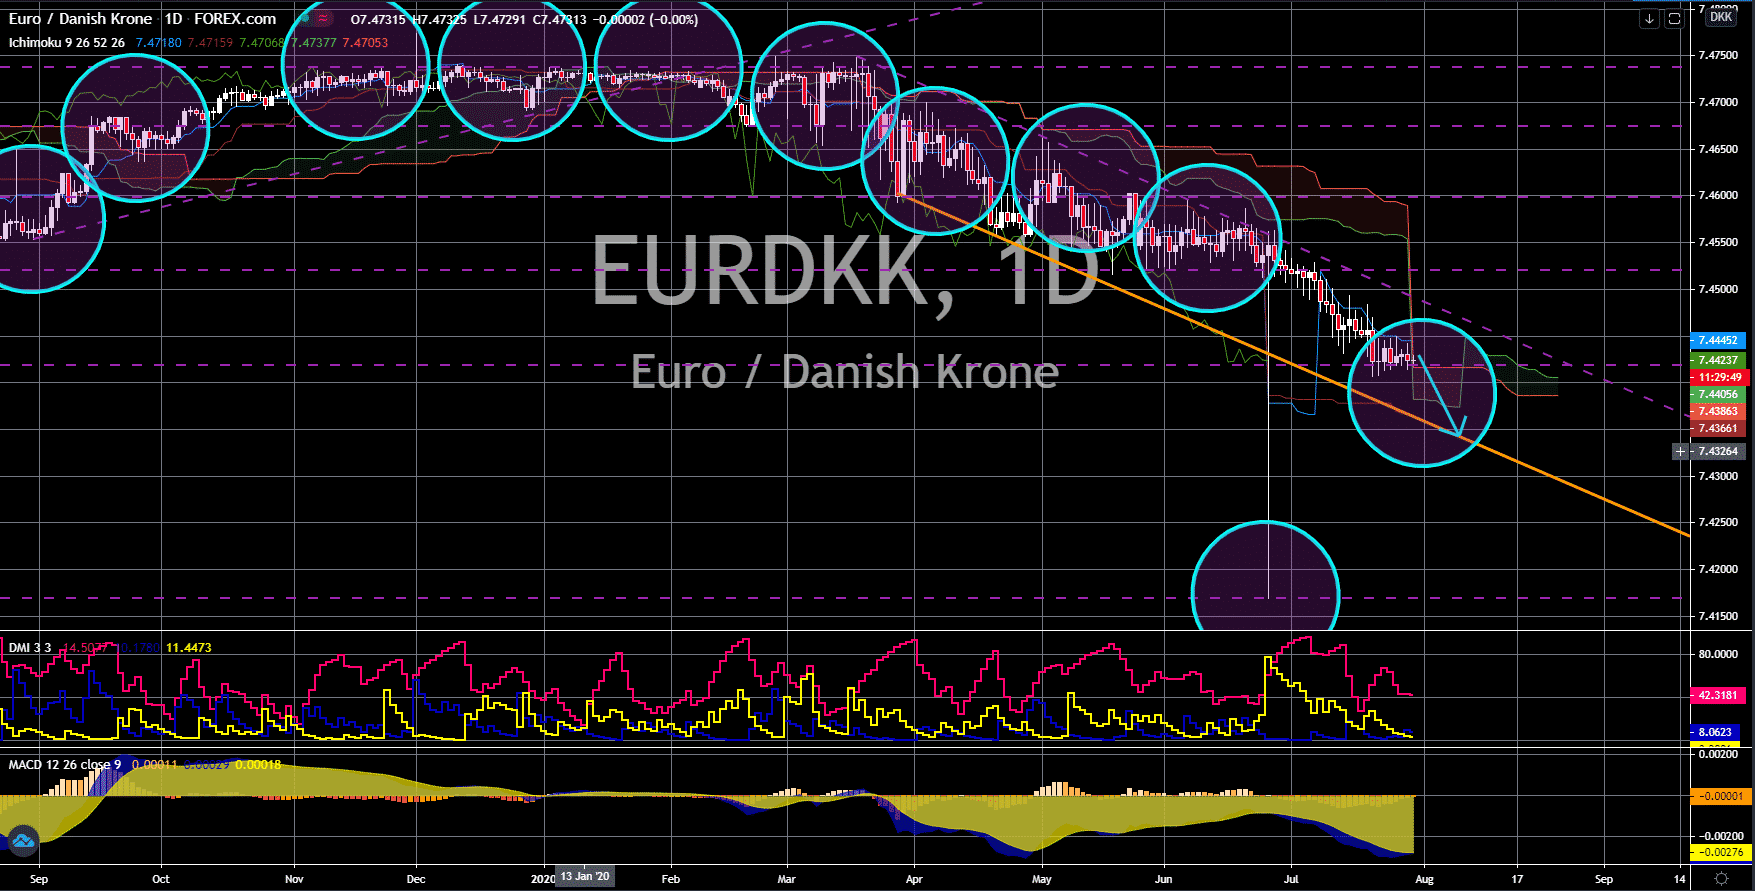 FinanceBrokerage - Notícias de mercado: EUR/DKK Gráfico